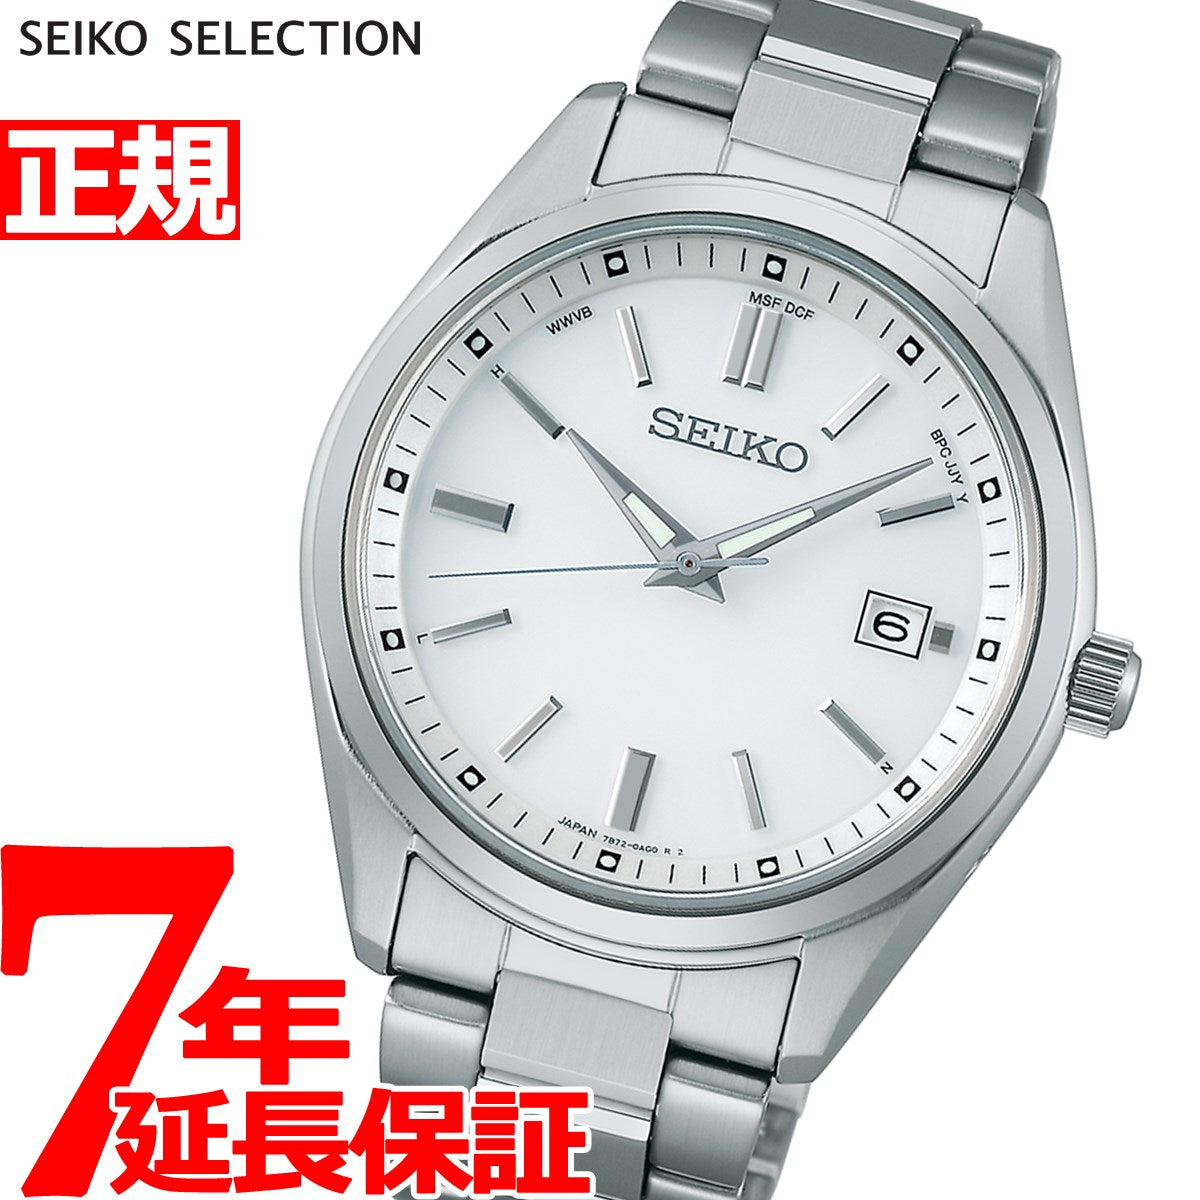 【新品】セイコー SEIKO 腕時計 メンズ SBTM317 セイコーセレクションソーラー電波時計 The Standard 電波ソーラー（7B72） ホワイトxシルバー アナログ表示